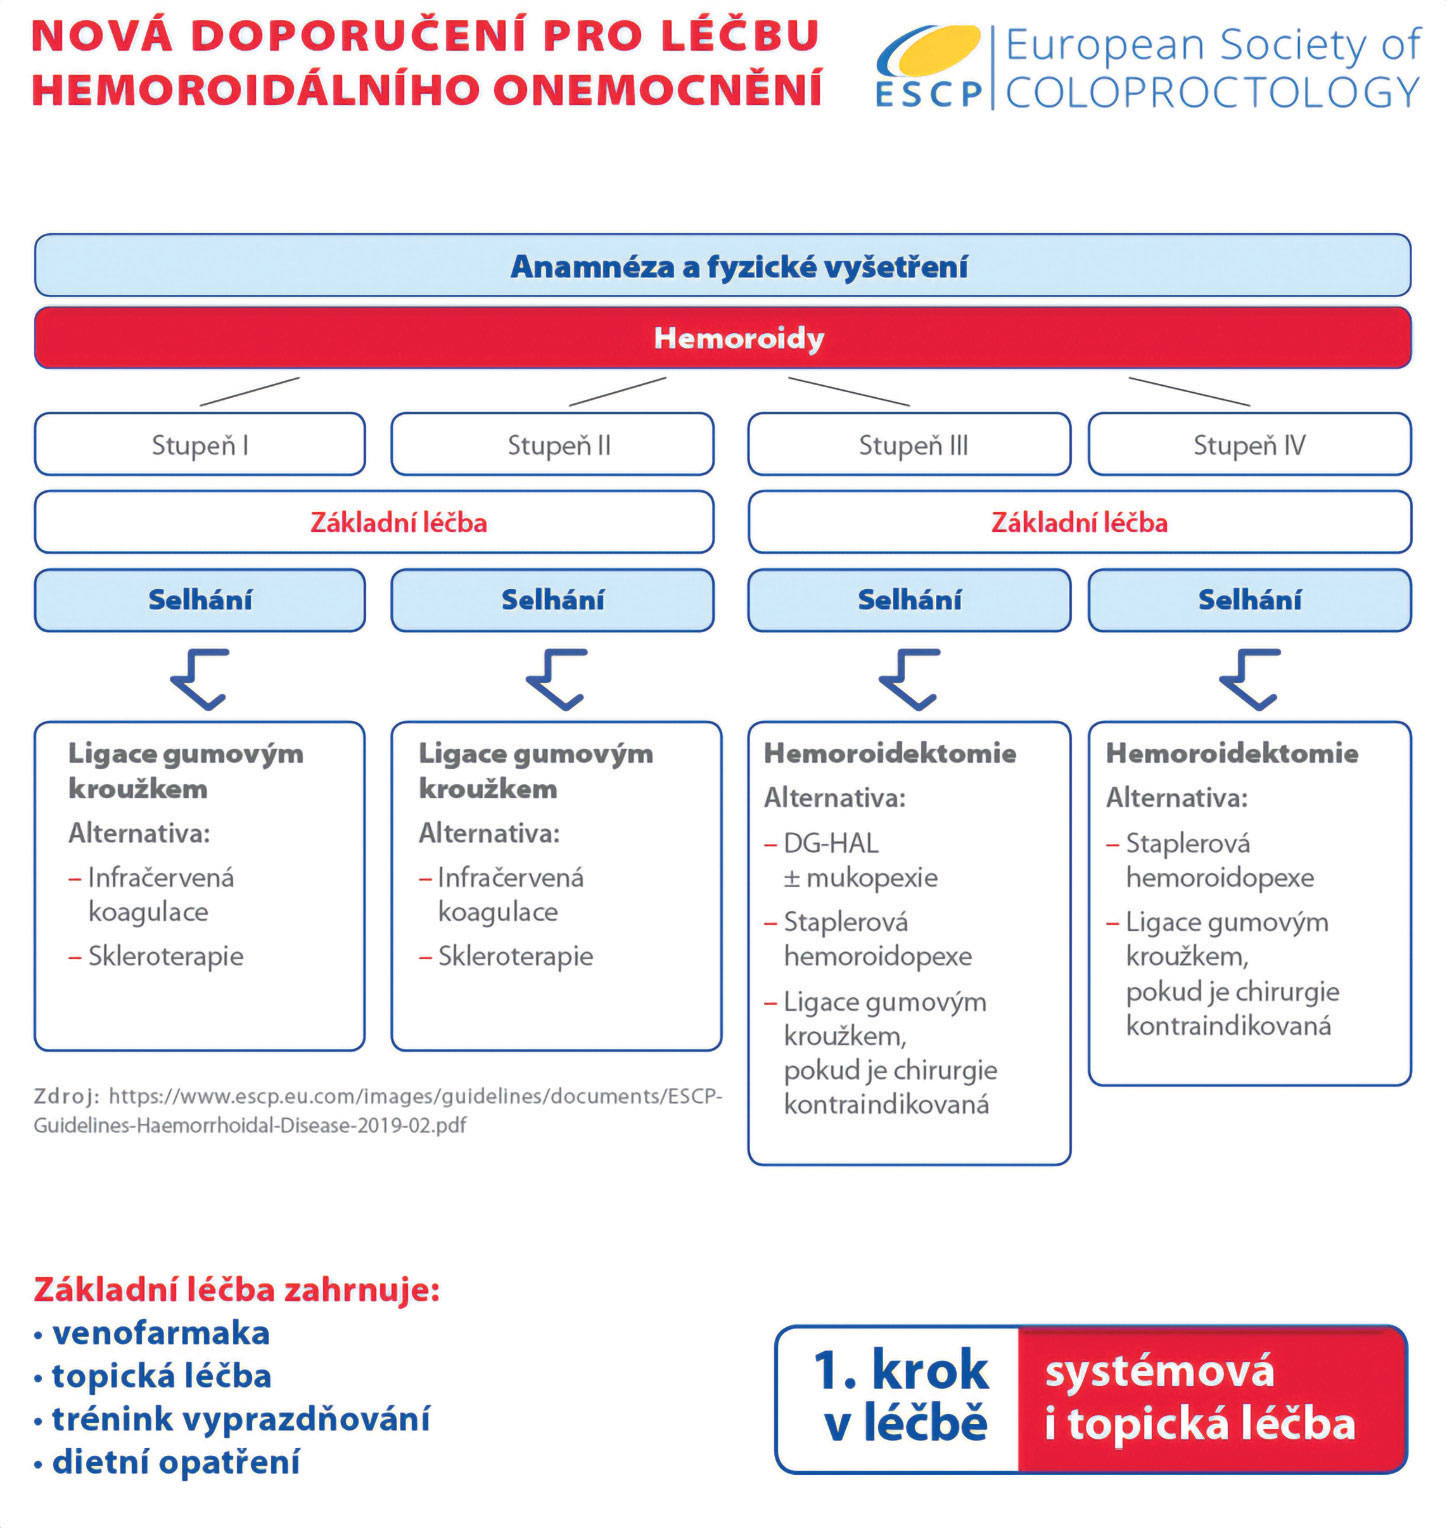 Schéma 2. Evropská koloproktologická společnost: Doporučení pro léčbu hemoroidální nemoci (9)